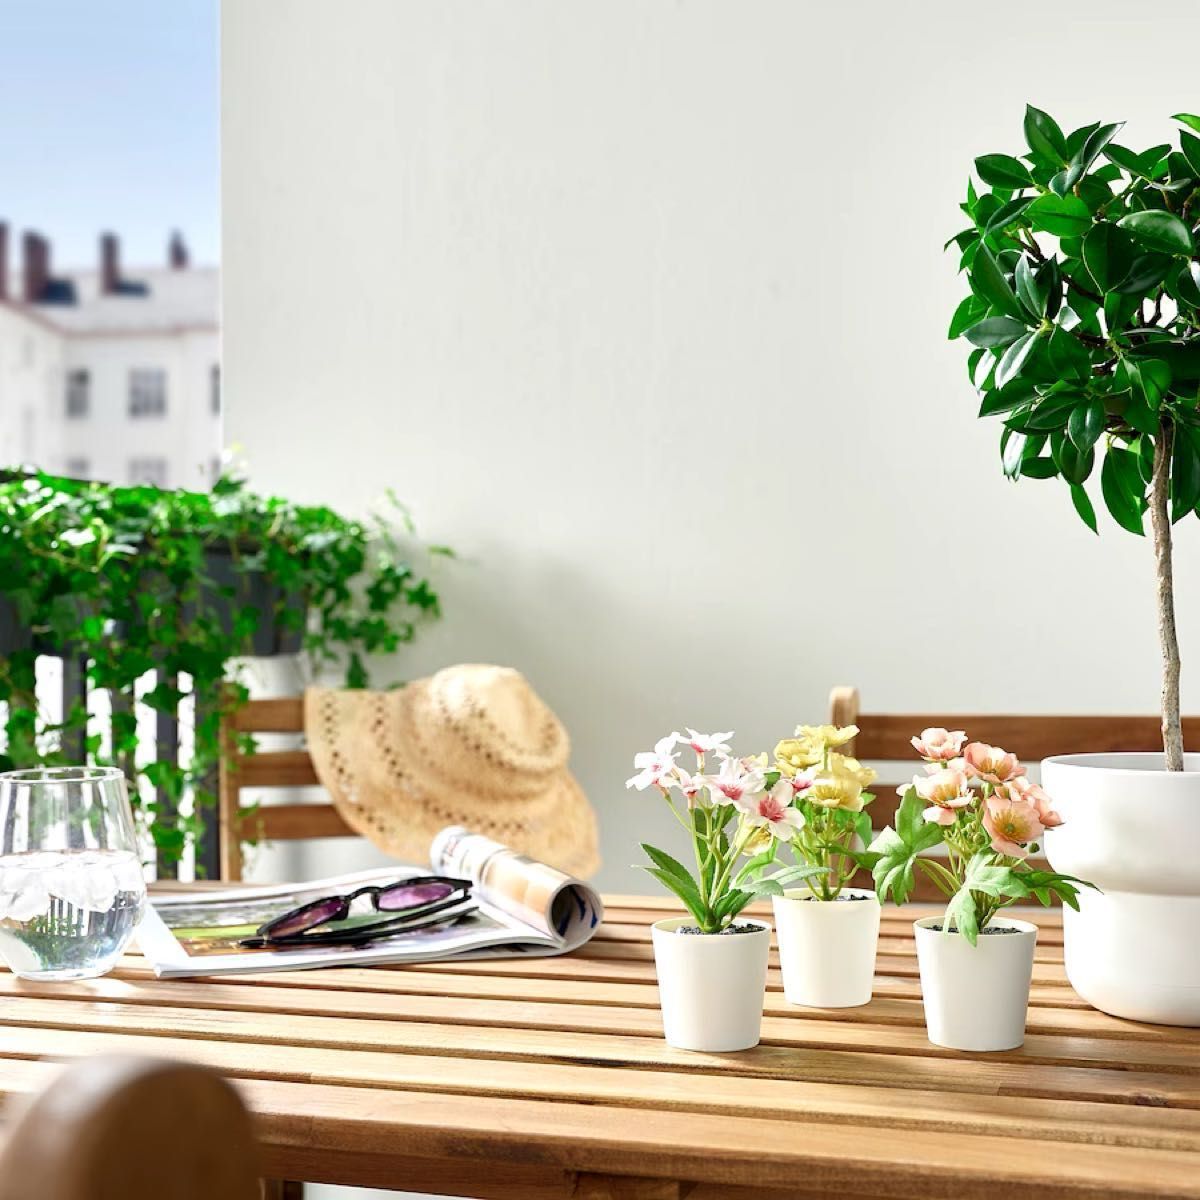 【新品】イケア IKEA フェイカ フェイクグリーン 鉢カバー付き6 cm 3ピース × 2種 フラワーミックス グリーン/ピンク